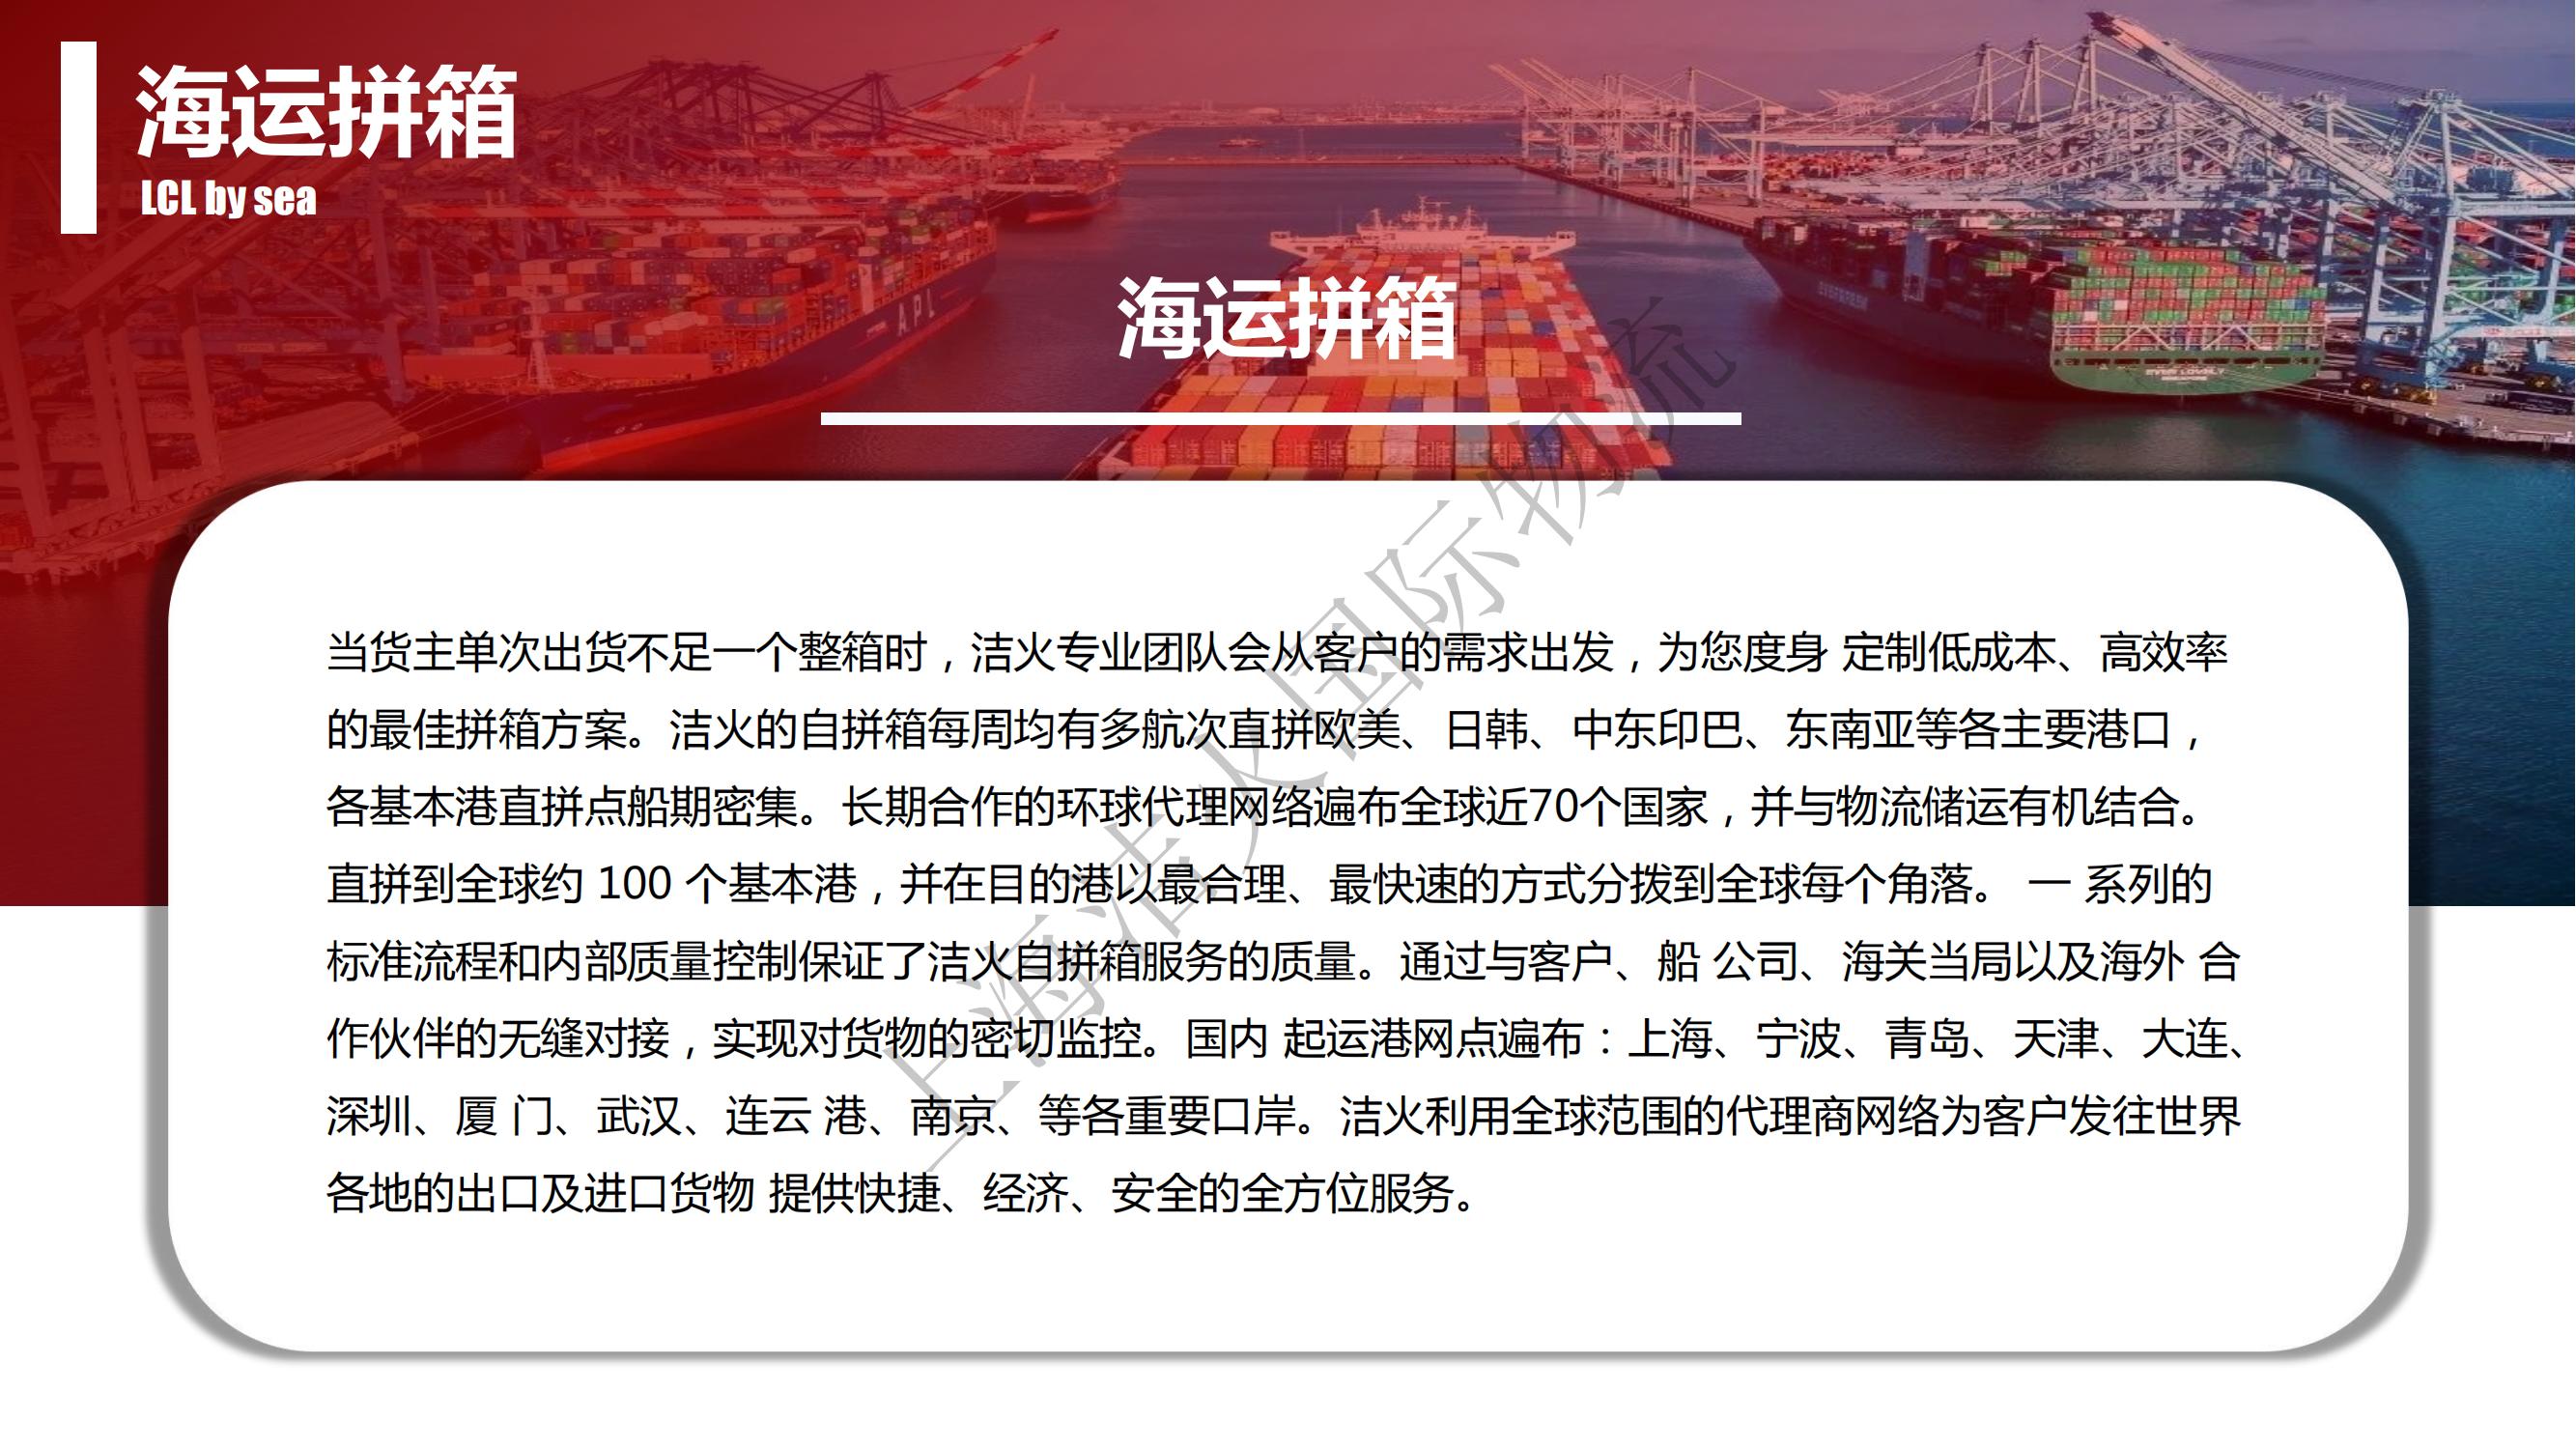 上海洁火国际物流有限公司(1)_10.jpg